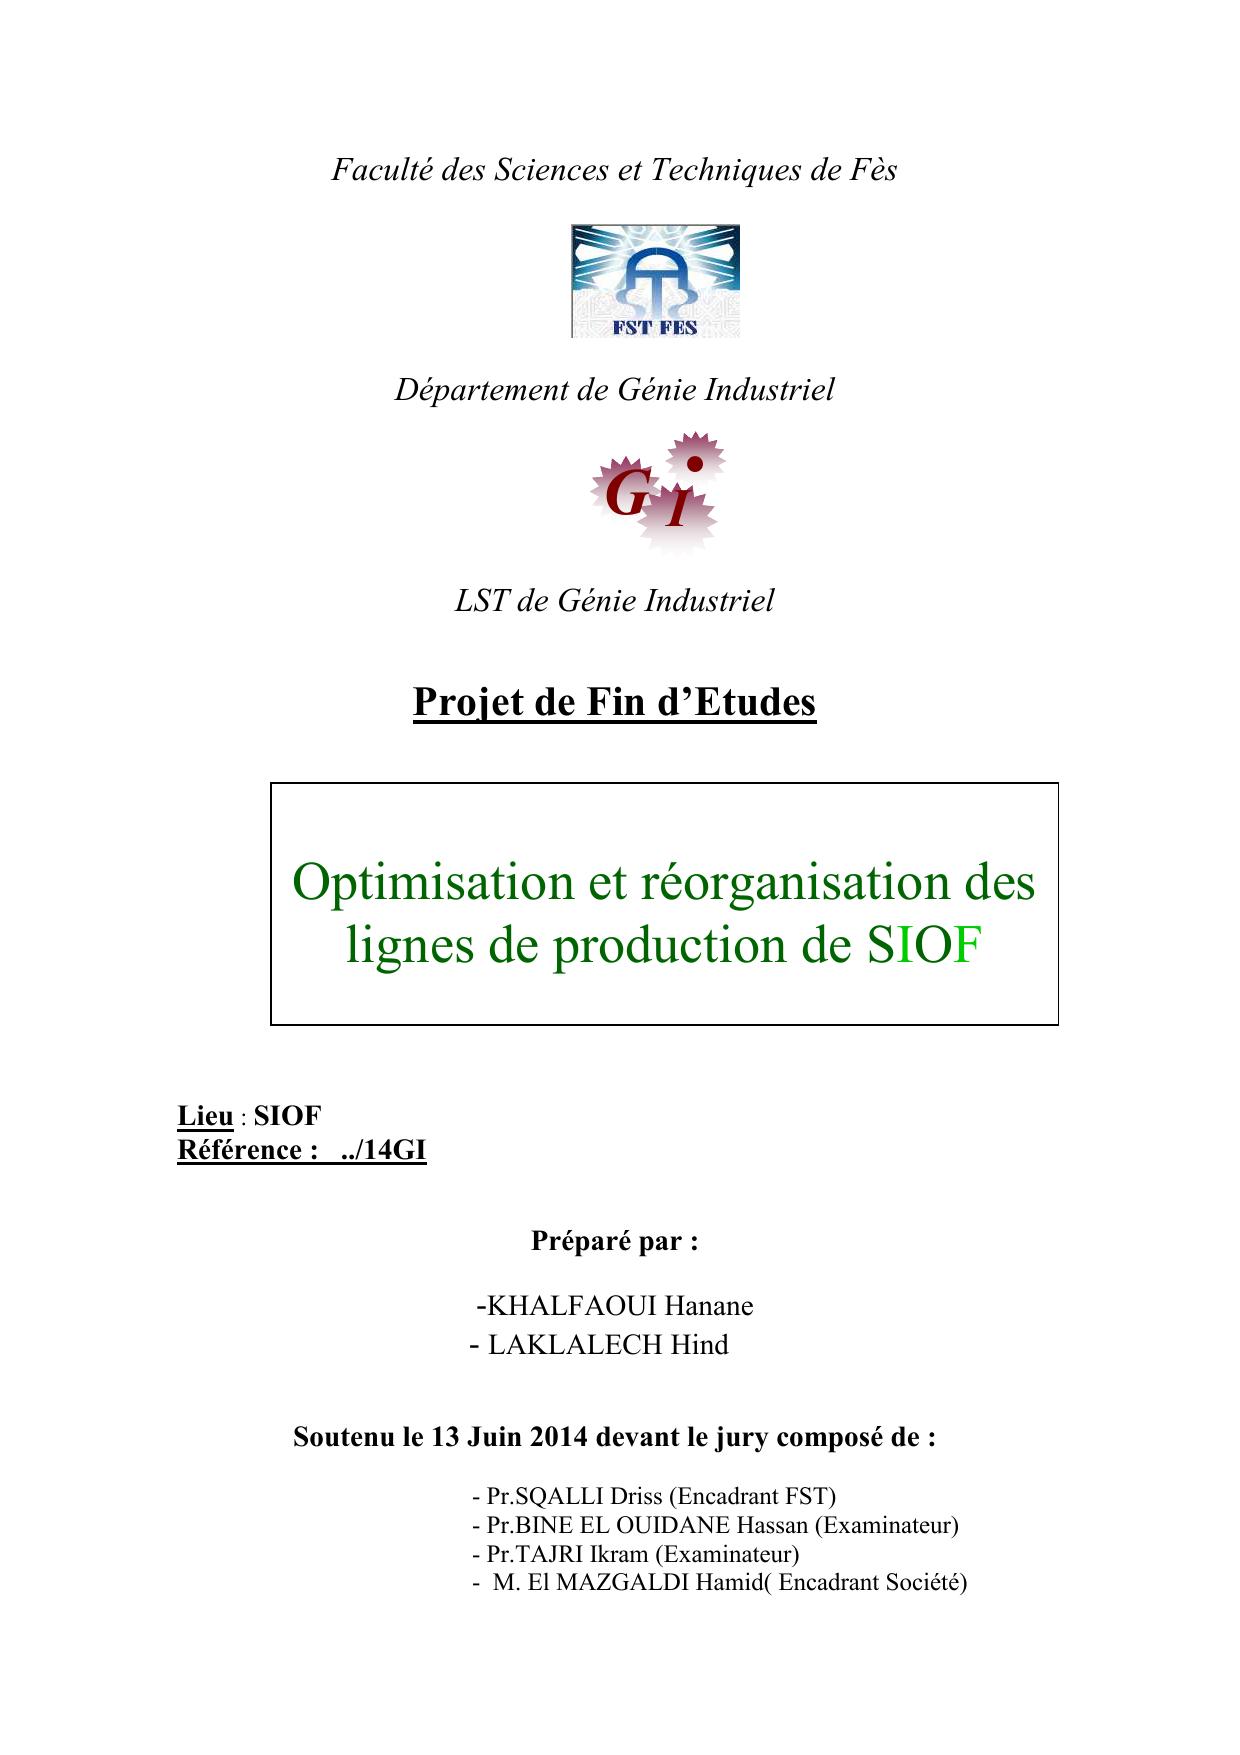 Optimisation et réorganisation des lignes de production de SIOF